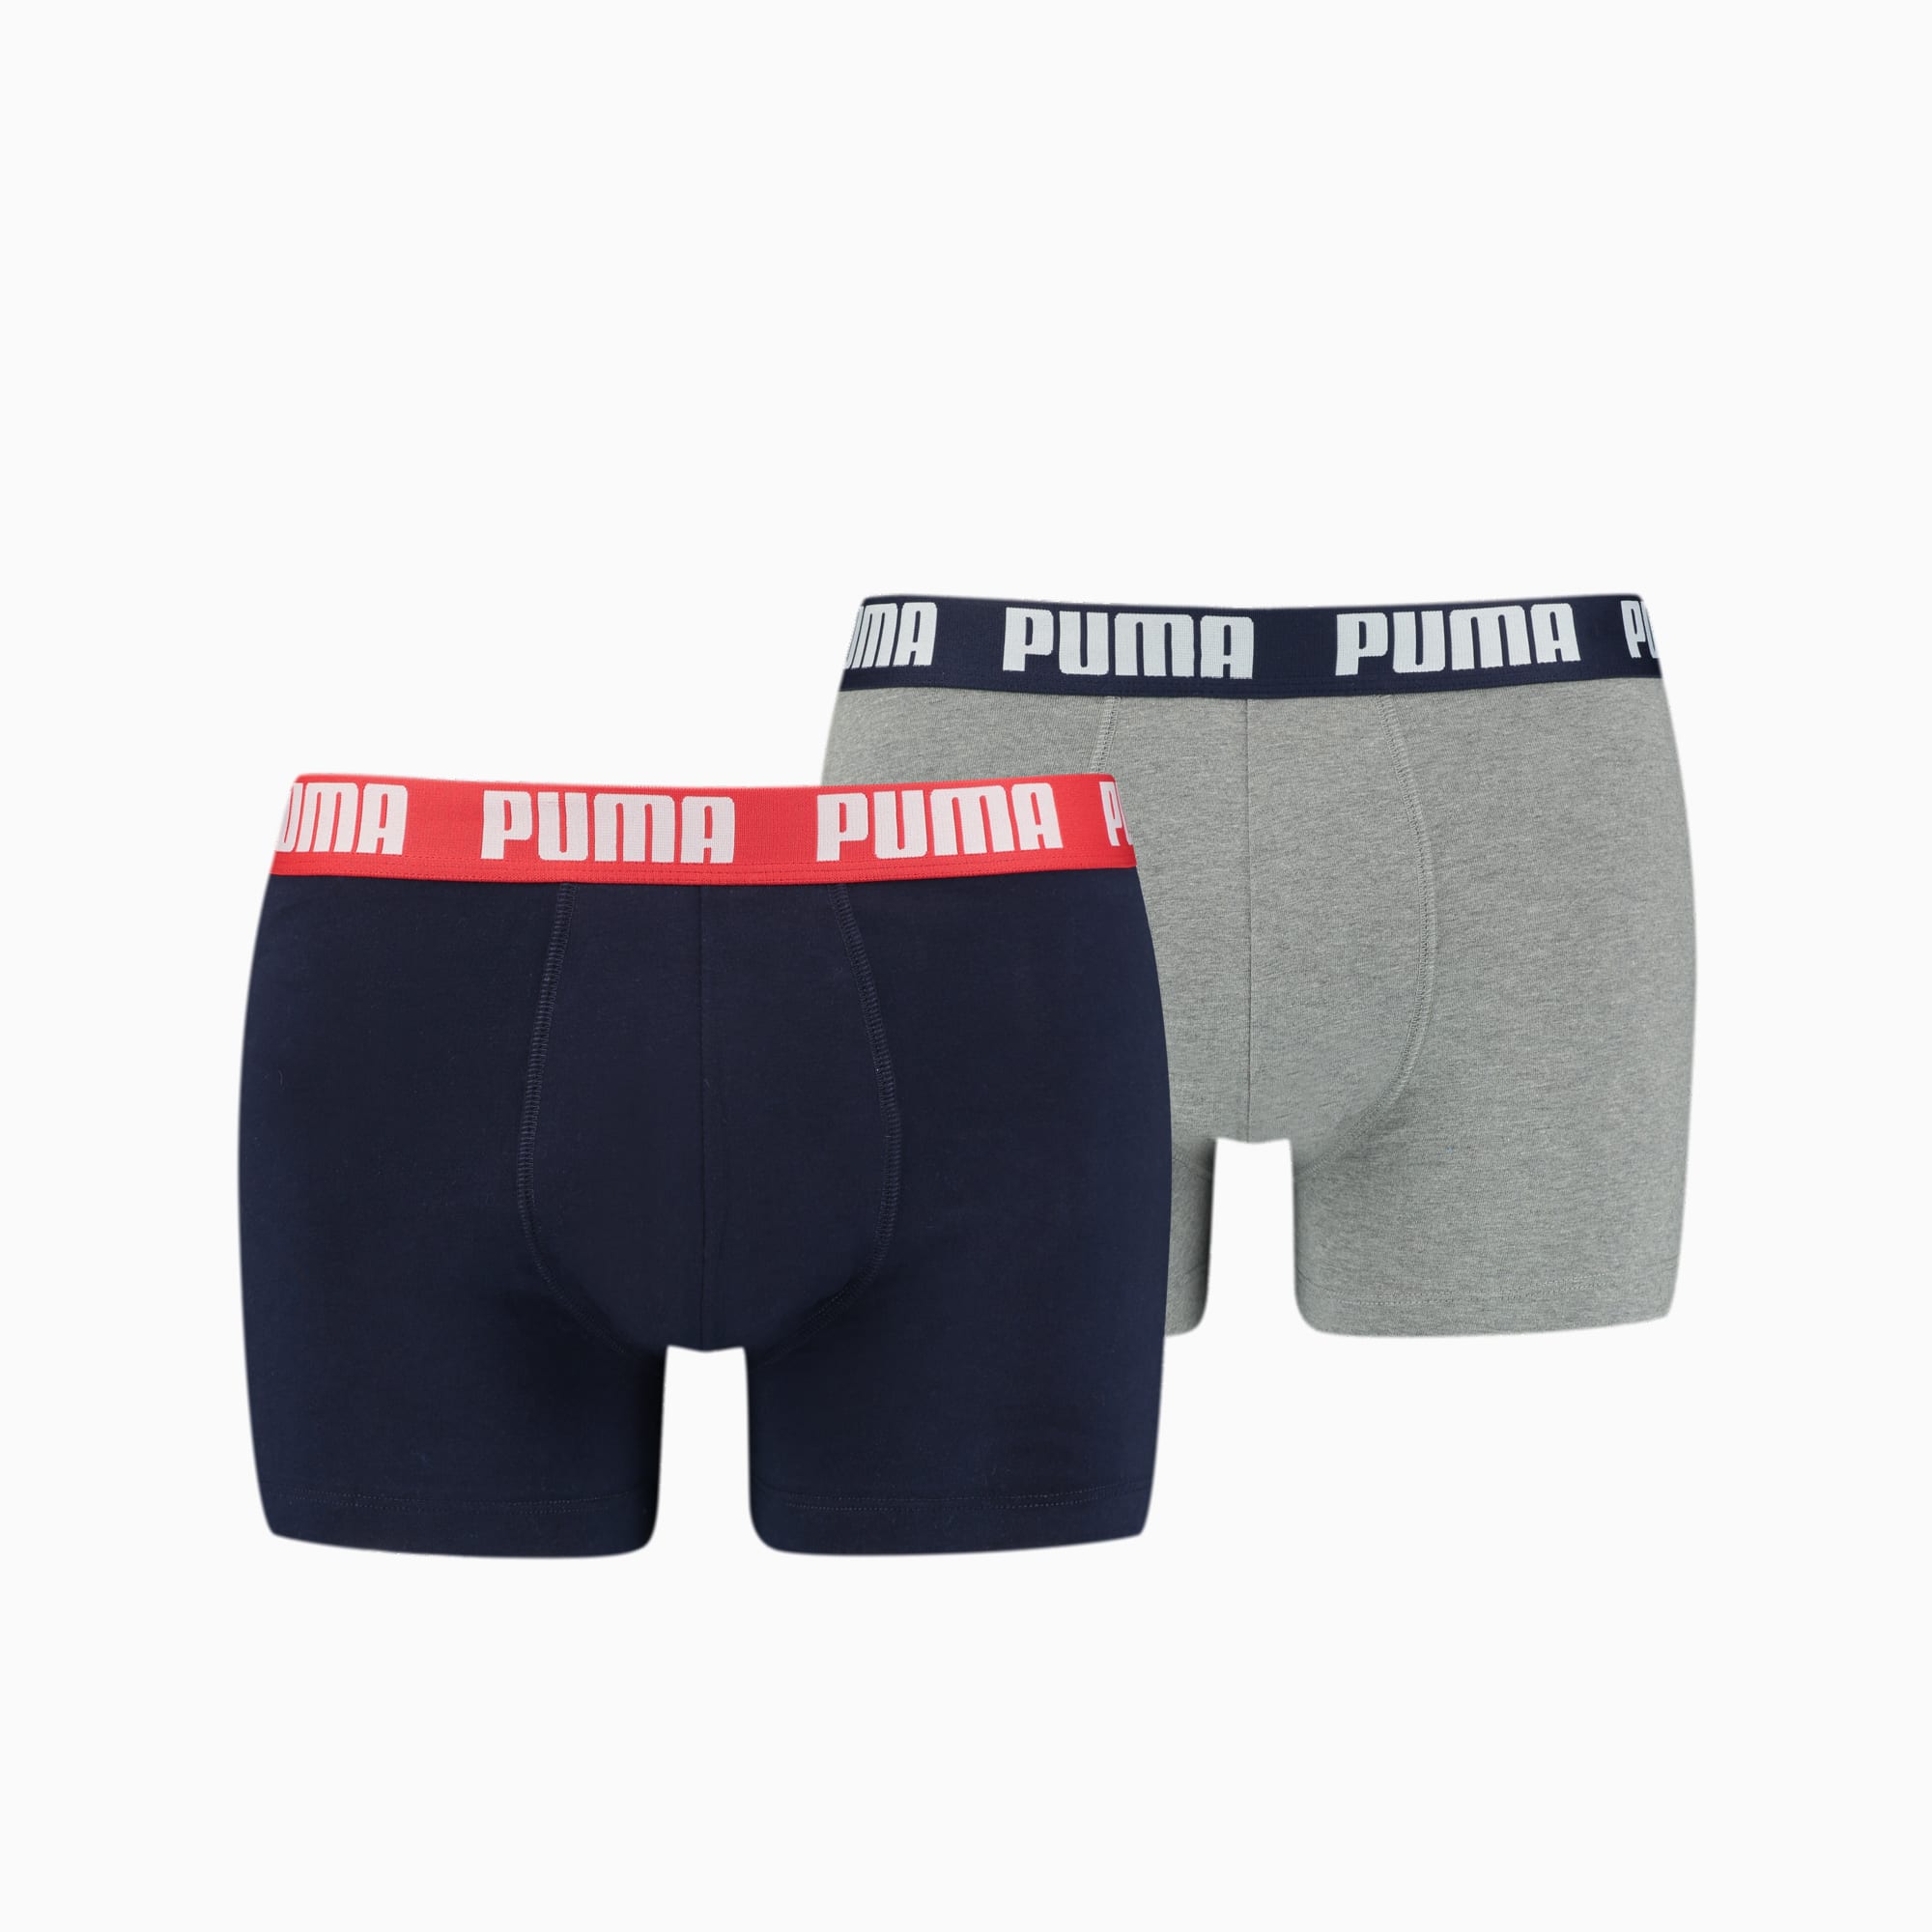 PUMA Basic Boxershorts Herren 2er-Pack, Mit Grau Melange, Grau/Blau, Größe: S, Kleidung